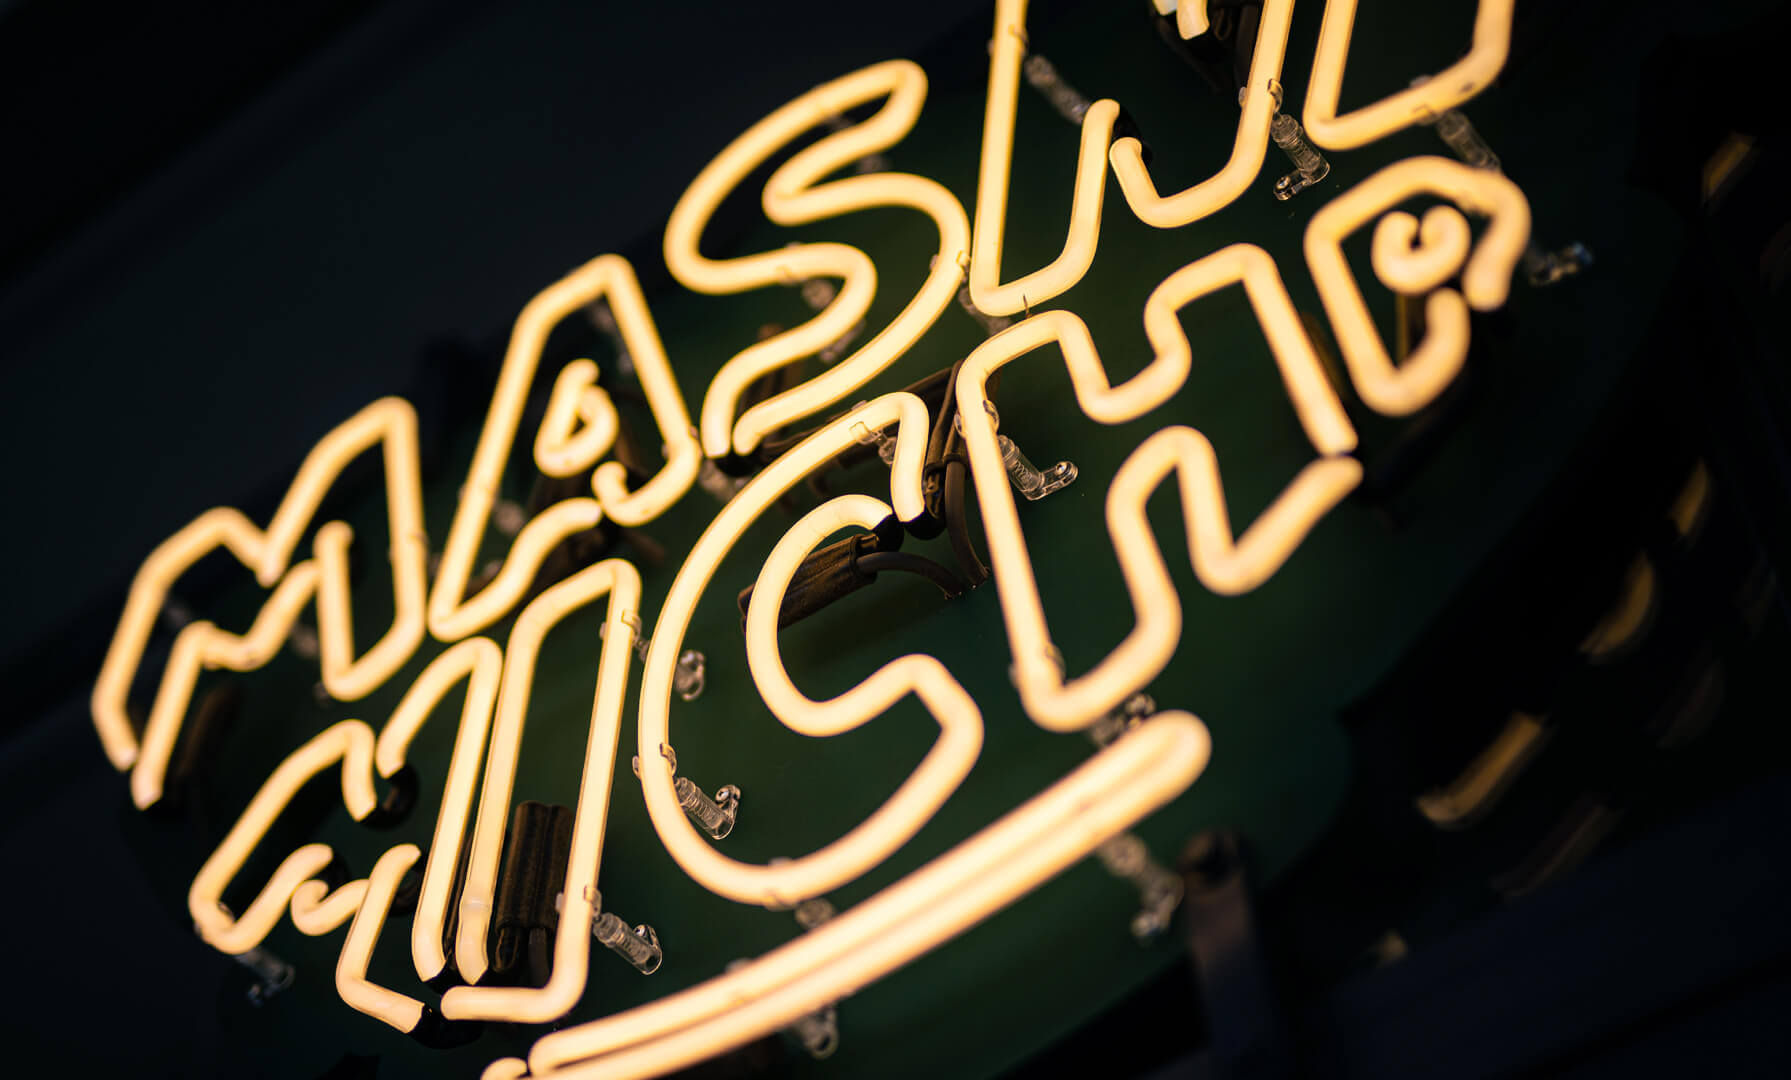 Masna Micha - Neonschild für das Restaurant Masna Micha in Gdansk, auf dem Gelände.